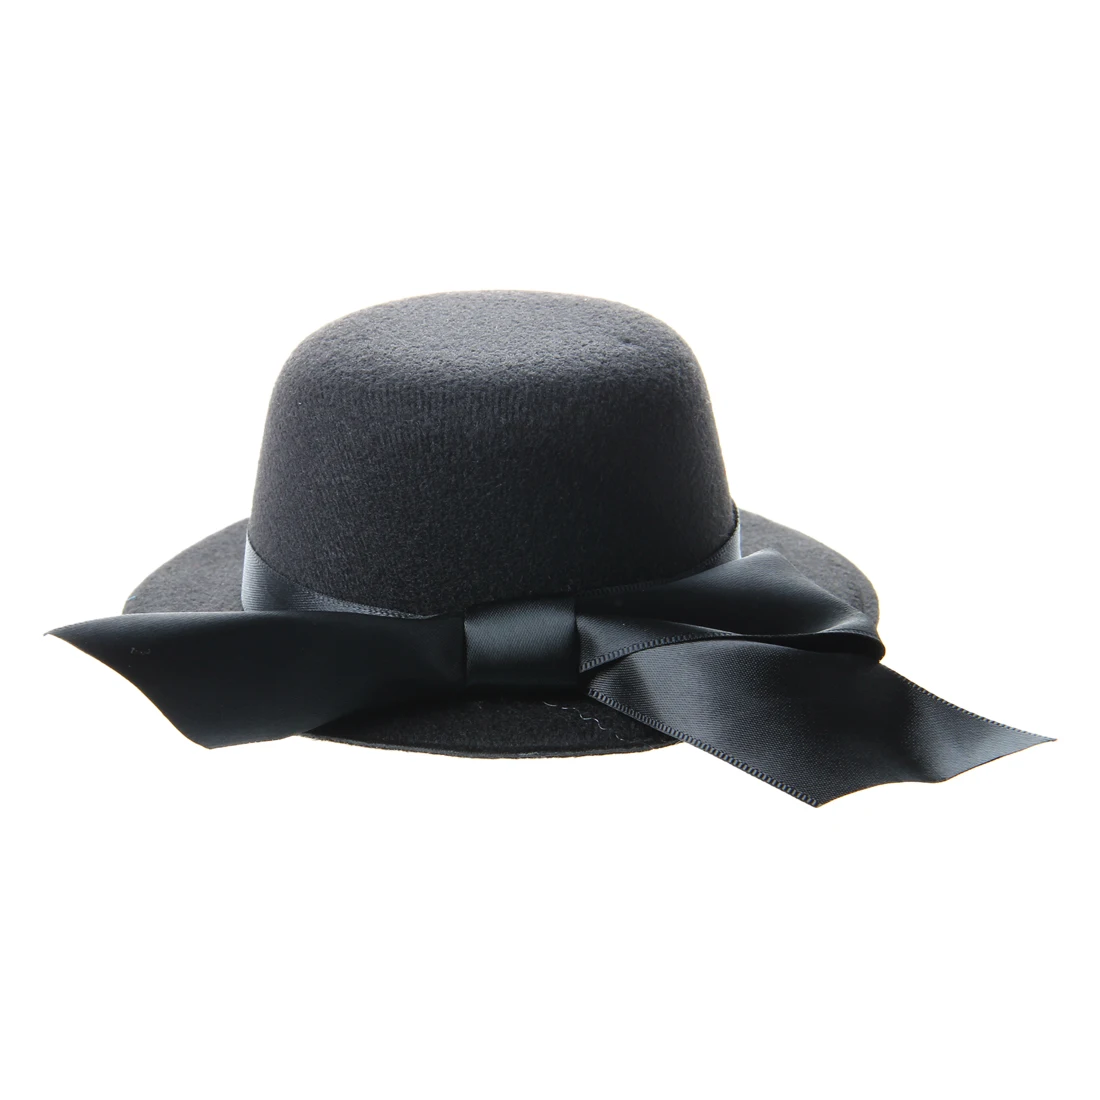 Дамы Мини Топ шляпа чародей Бурлеск Millinery w/Bowknot-черный